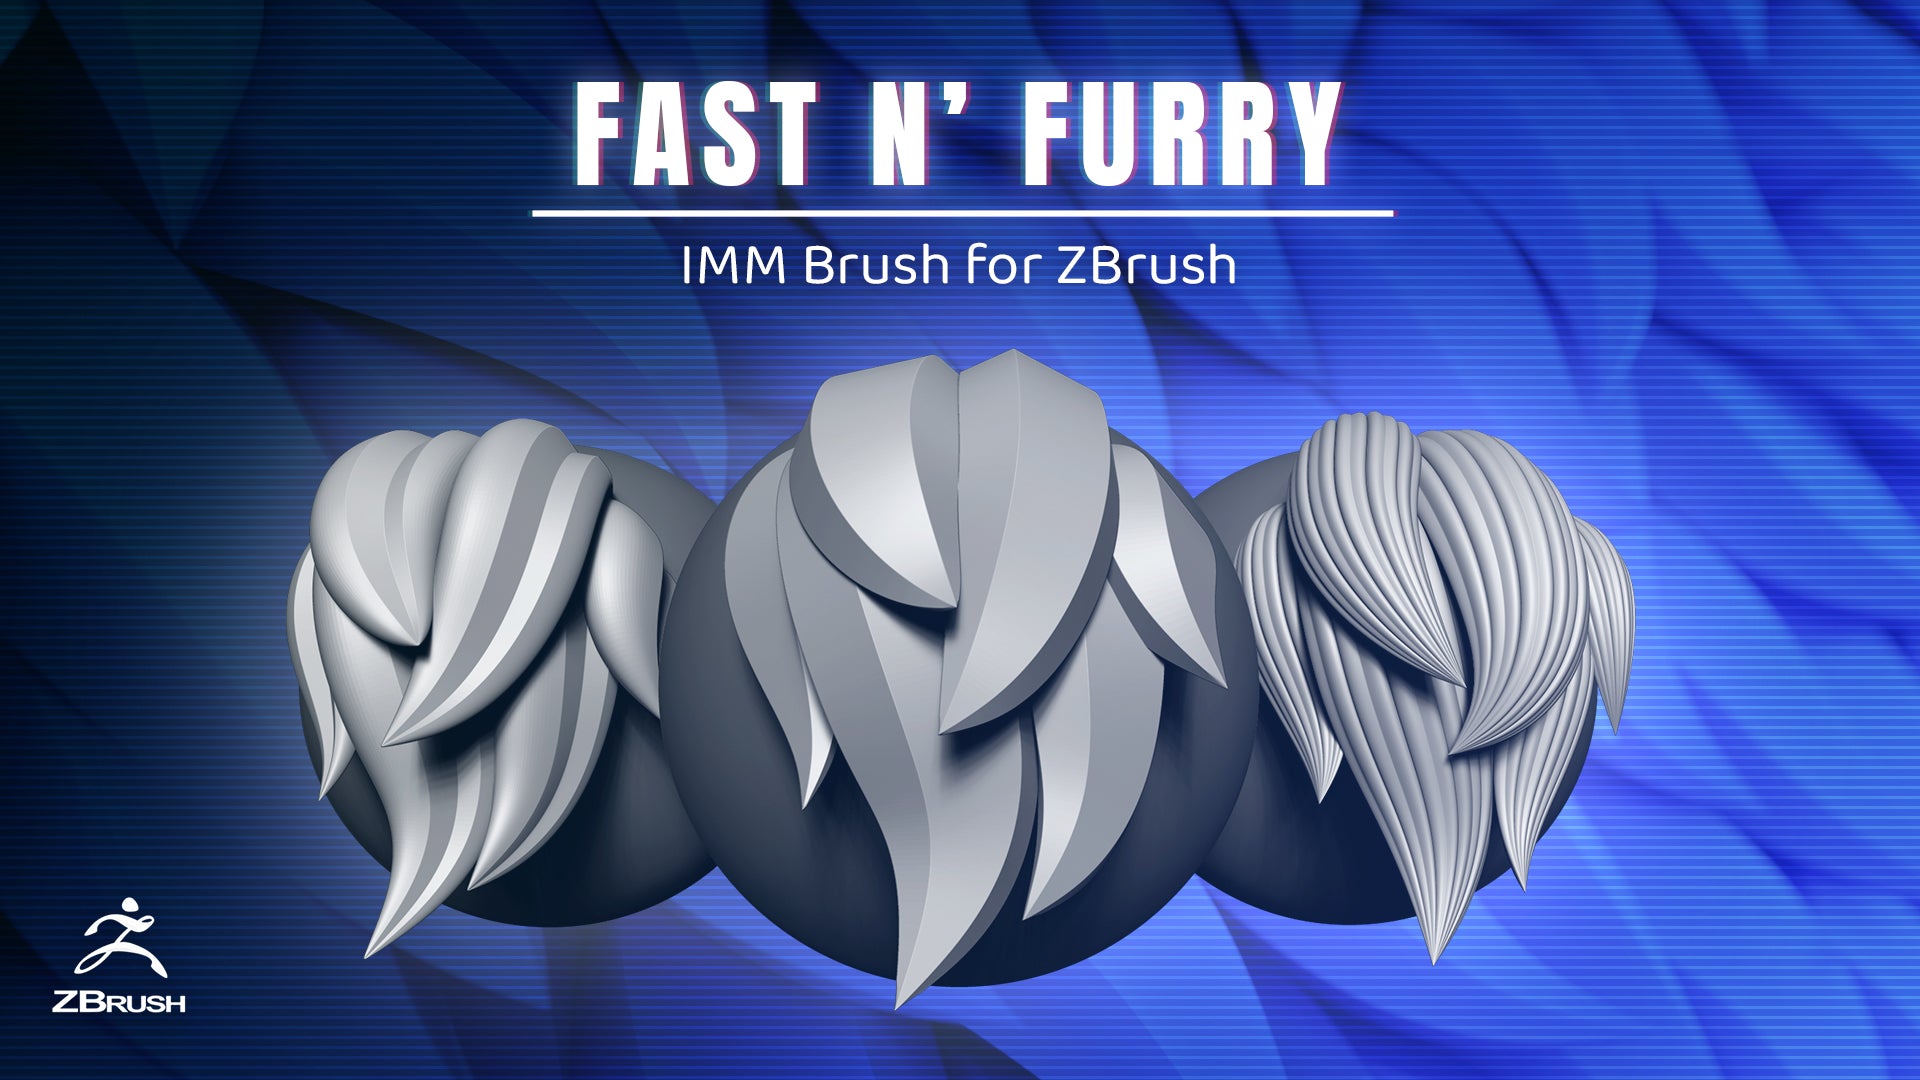 Fast N' Furry IMM Brush